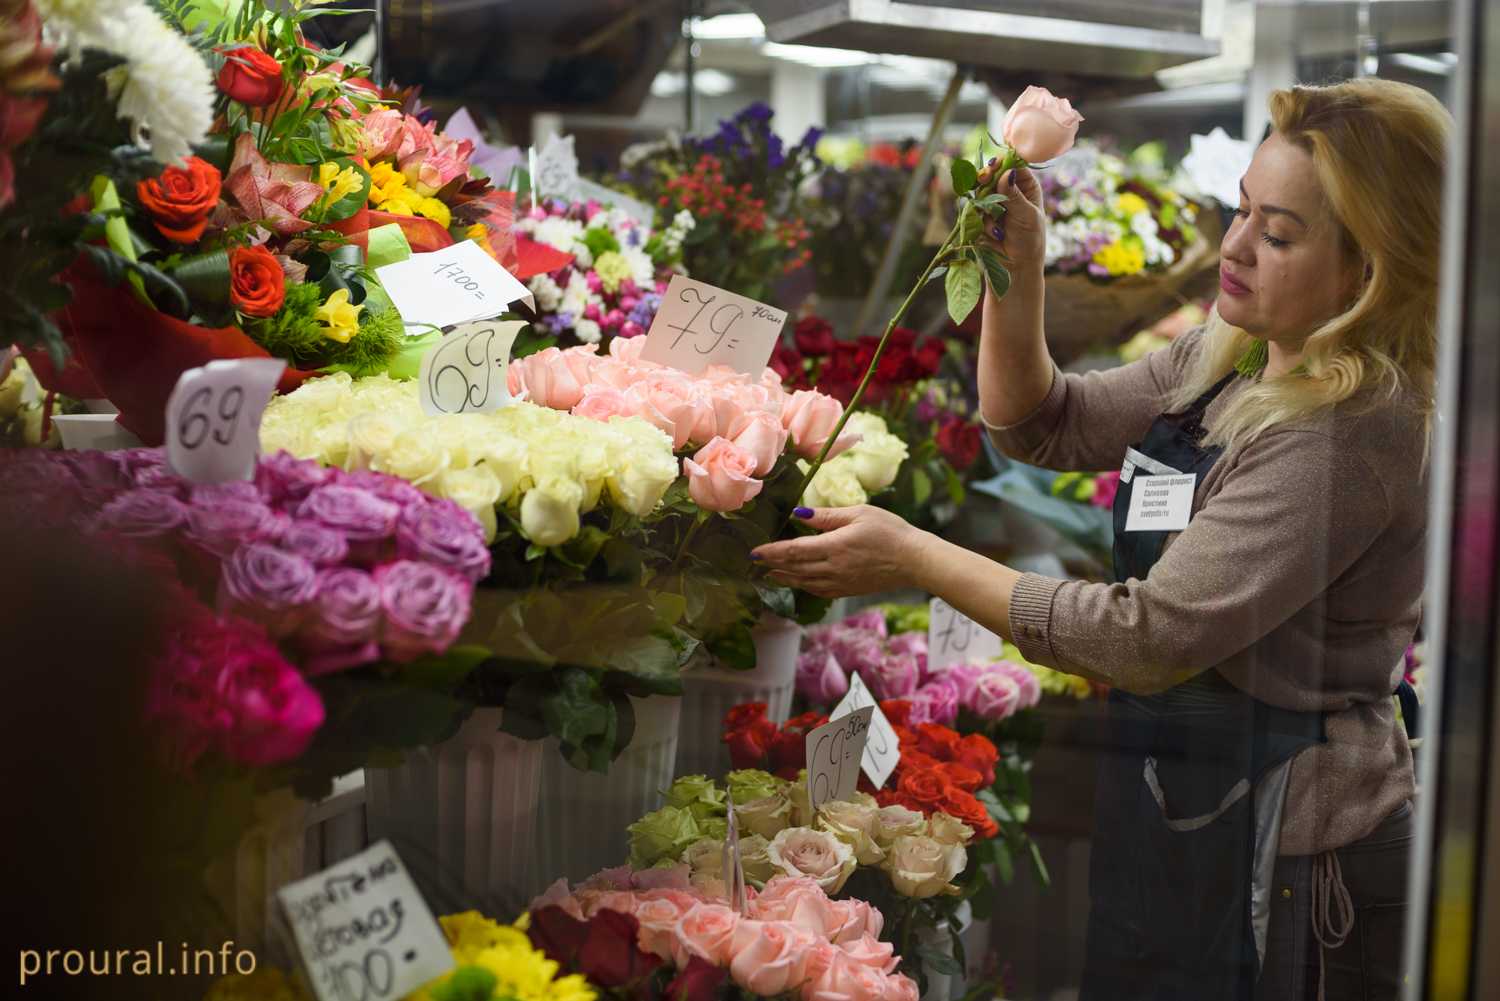 Купить розы в цветочном магазине. Цветочный бизнес. Люди в цветочном магазине. Цветочный ряд букеты. Цветочный магазин.